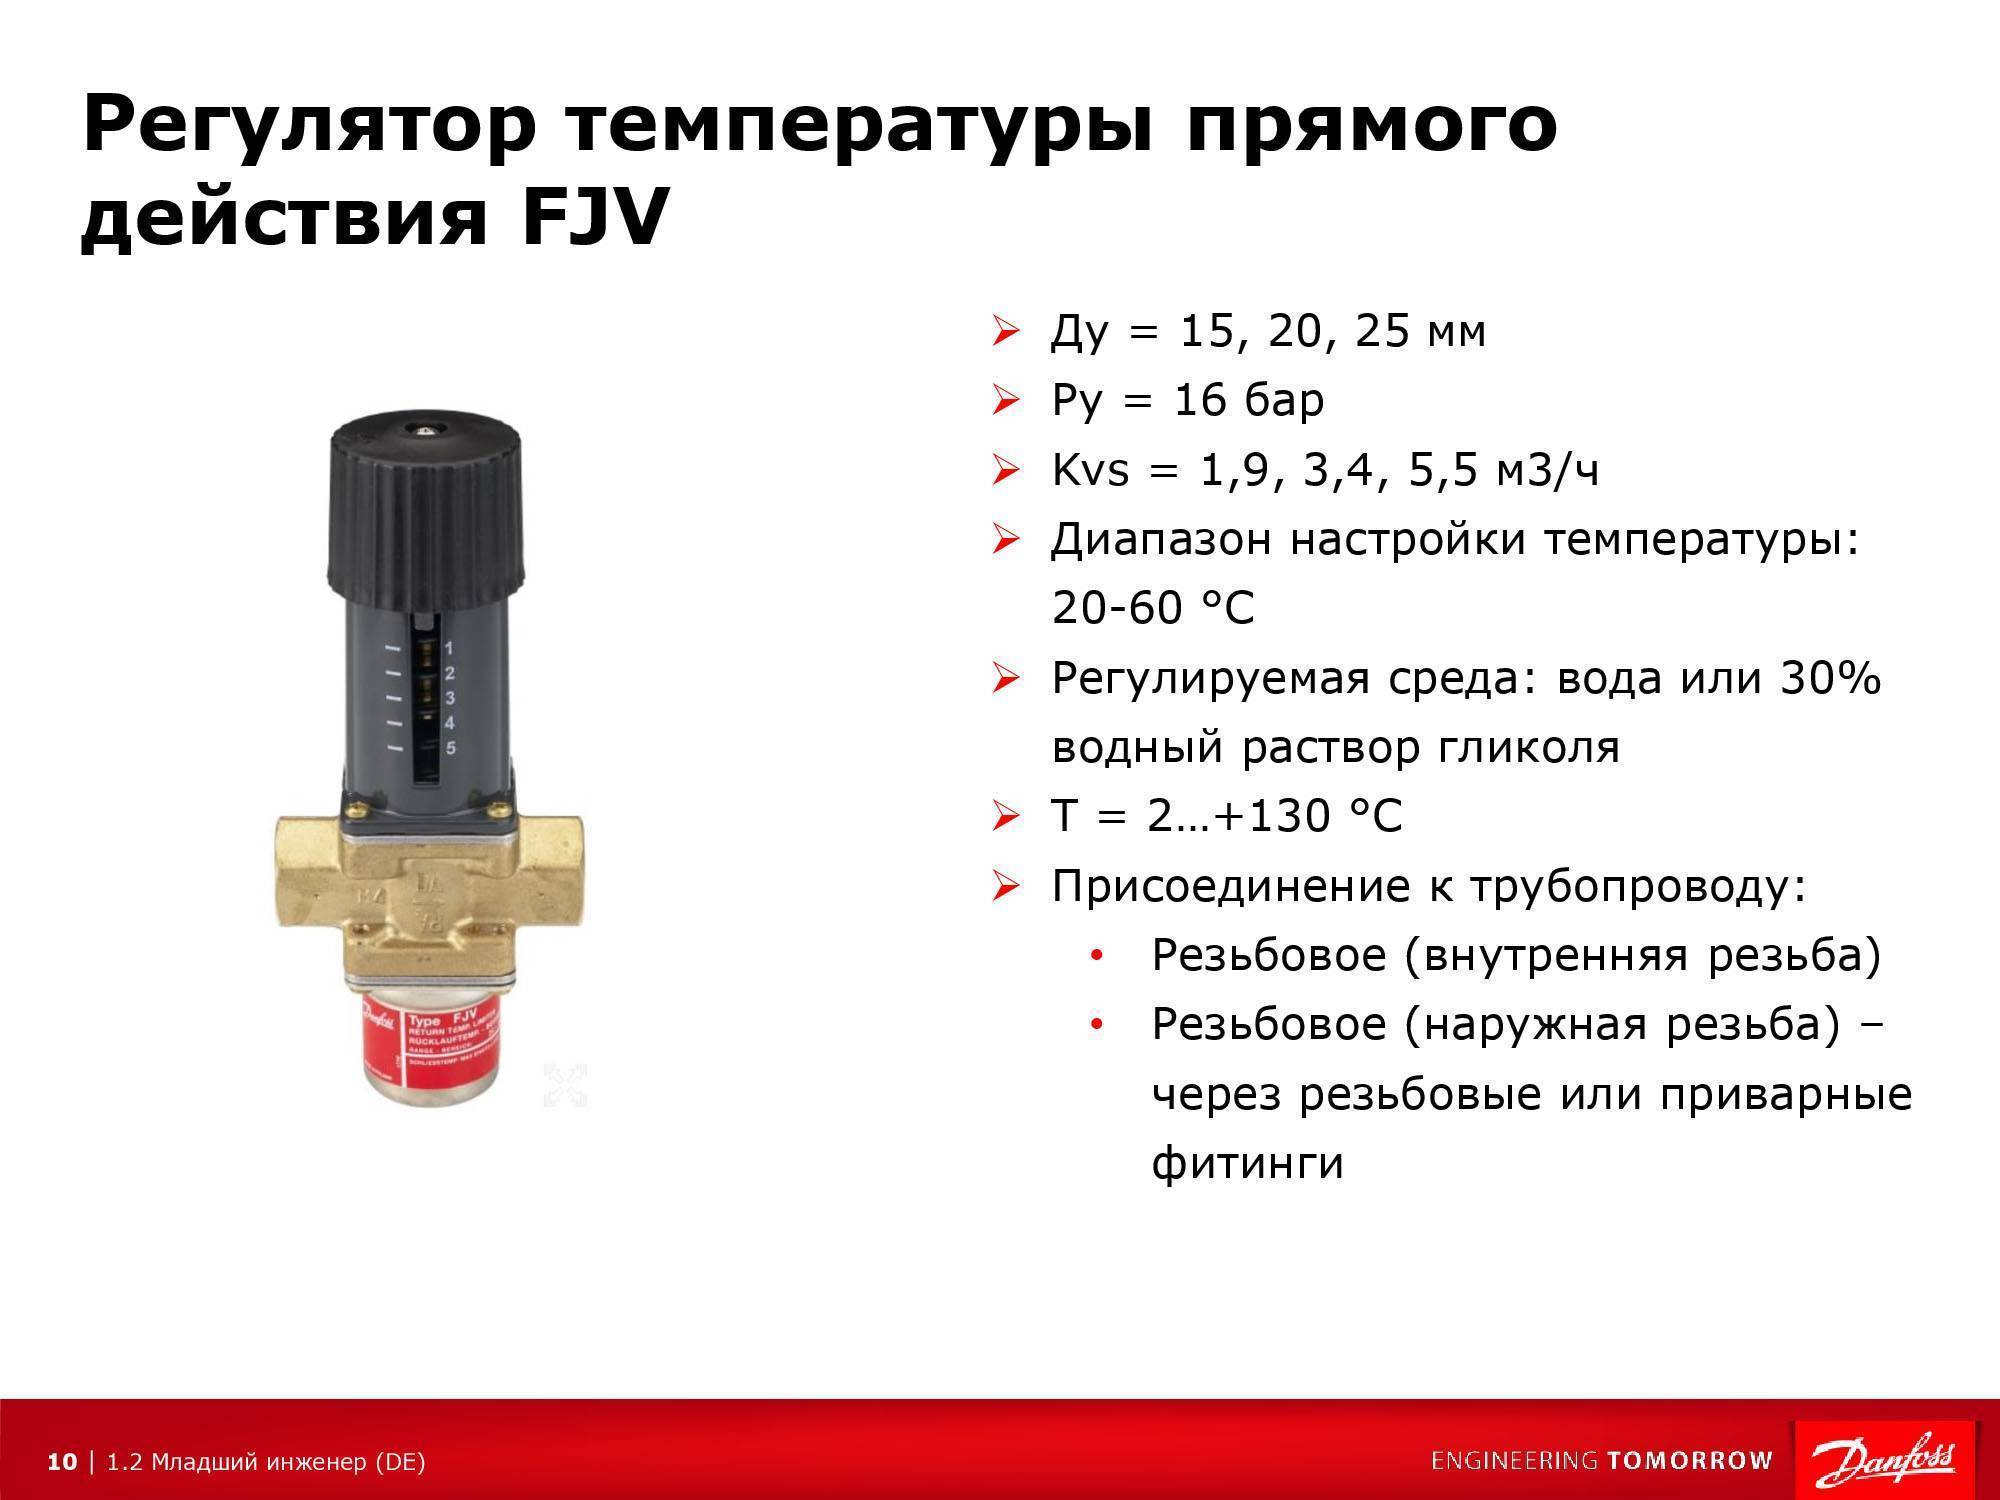 Автоматический регулятор температуры отопления для радиатора, как регулировать температуру батареи, примеры на фото и видео